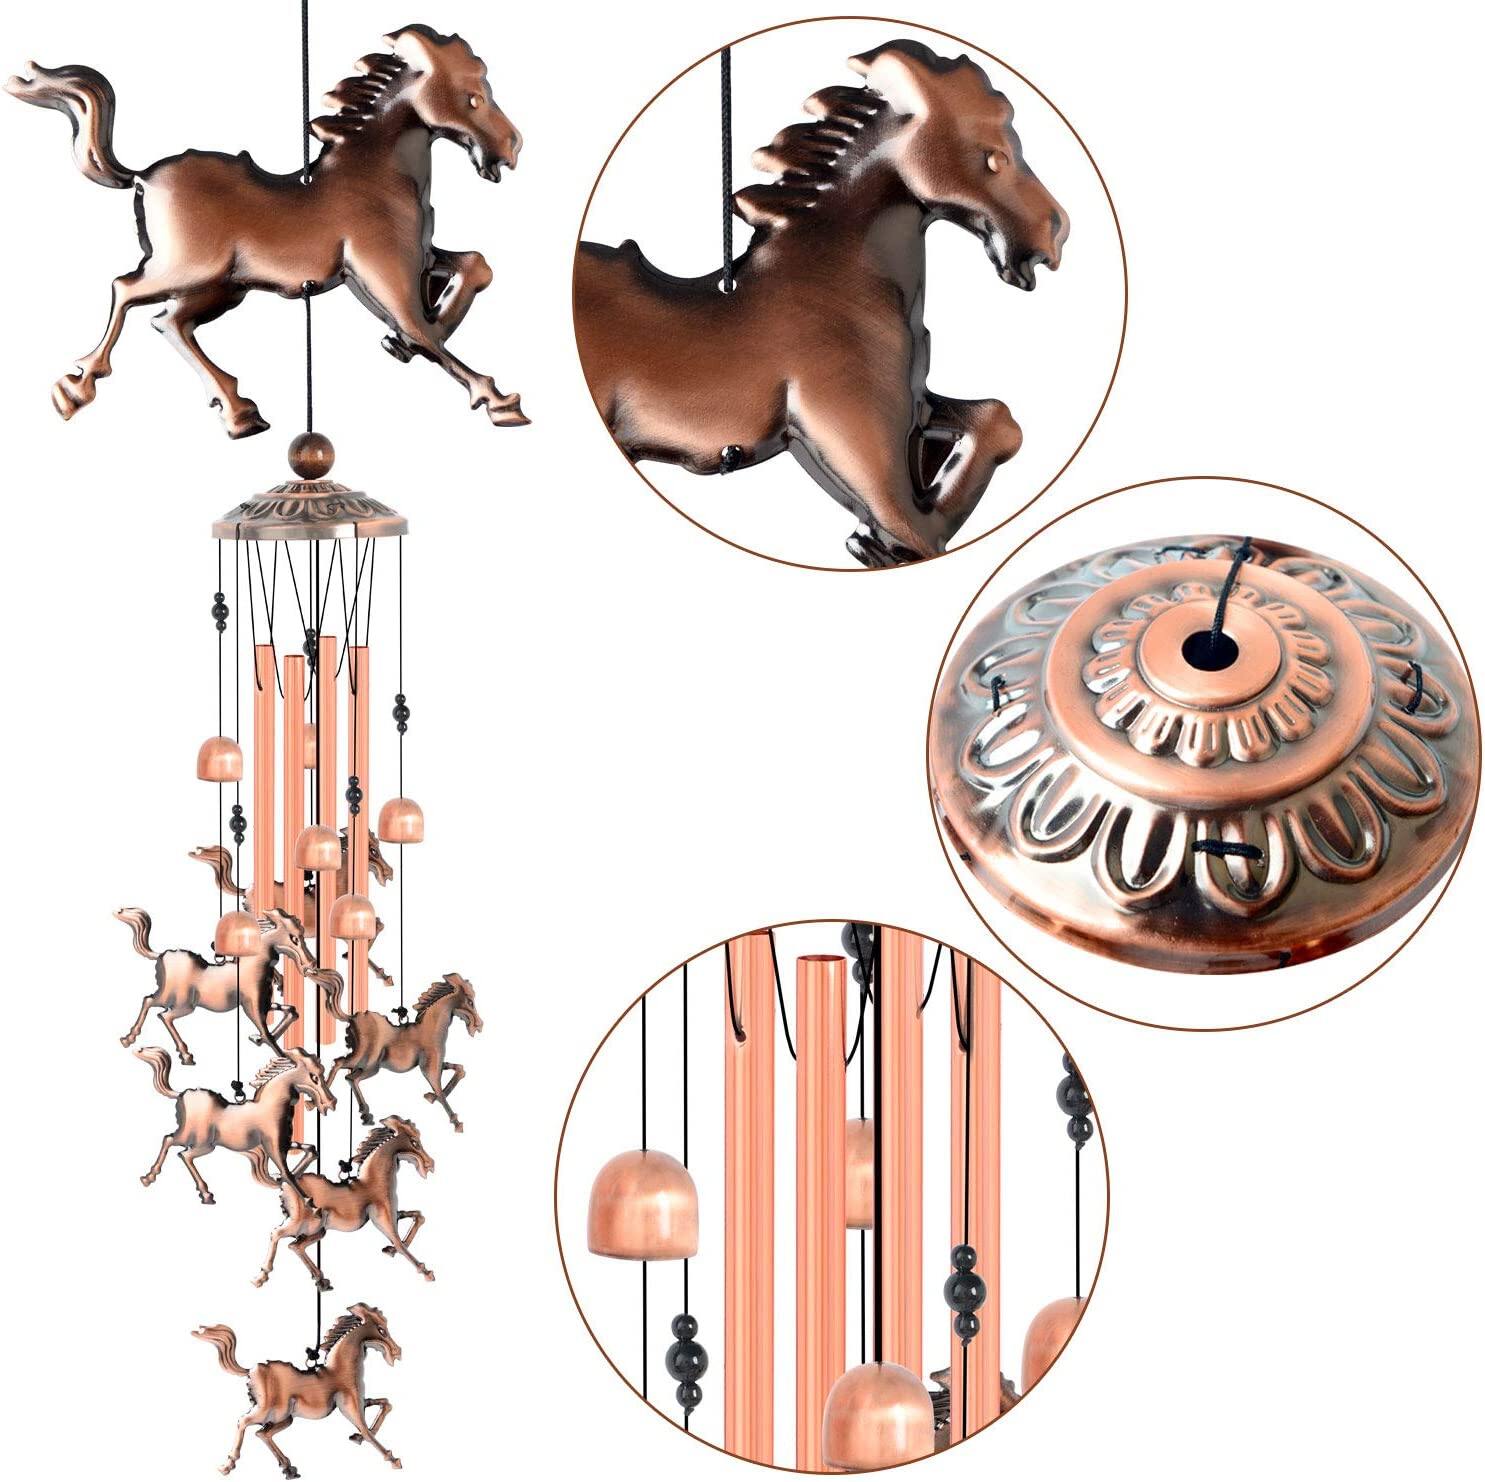 Czyste, ręcznie robione dzwonki wietrzne z miedzianego konia